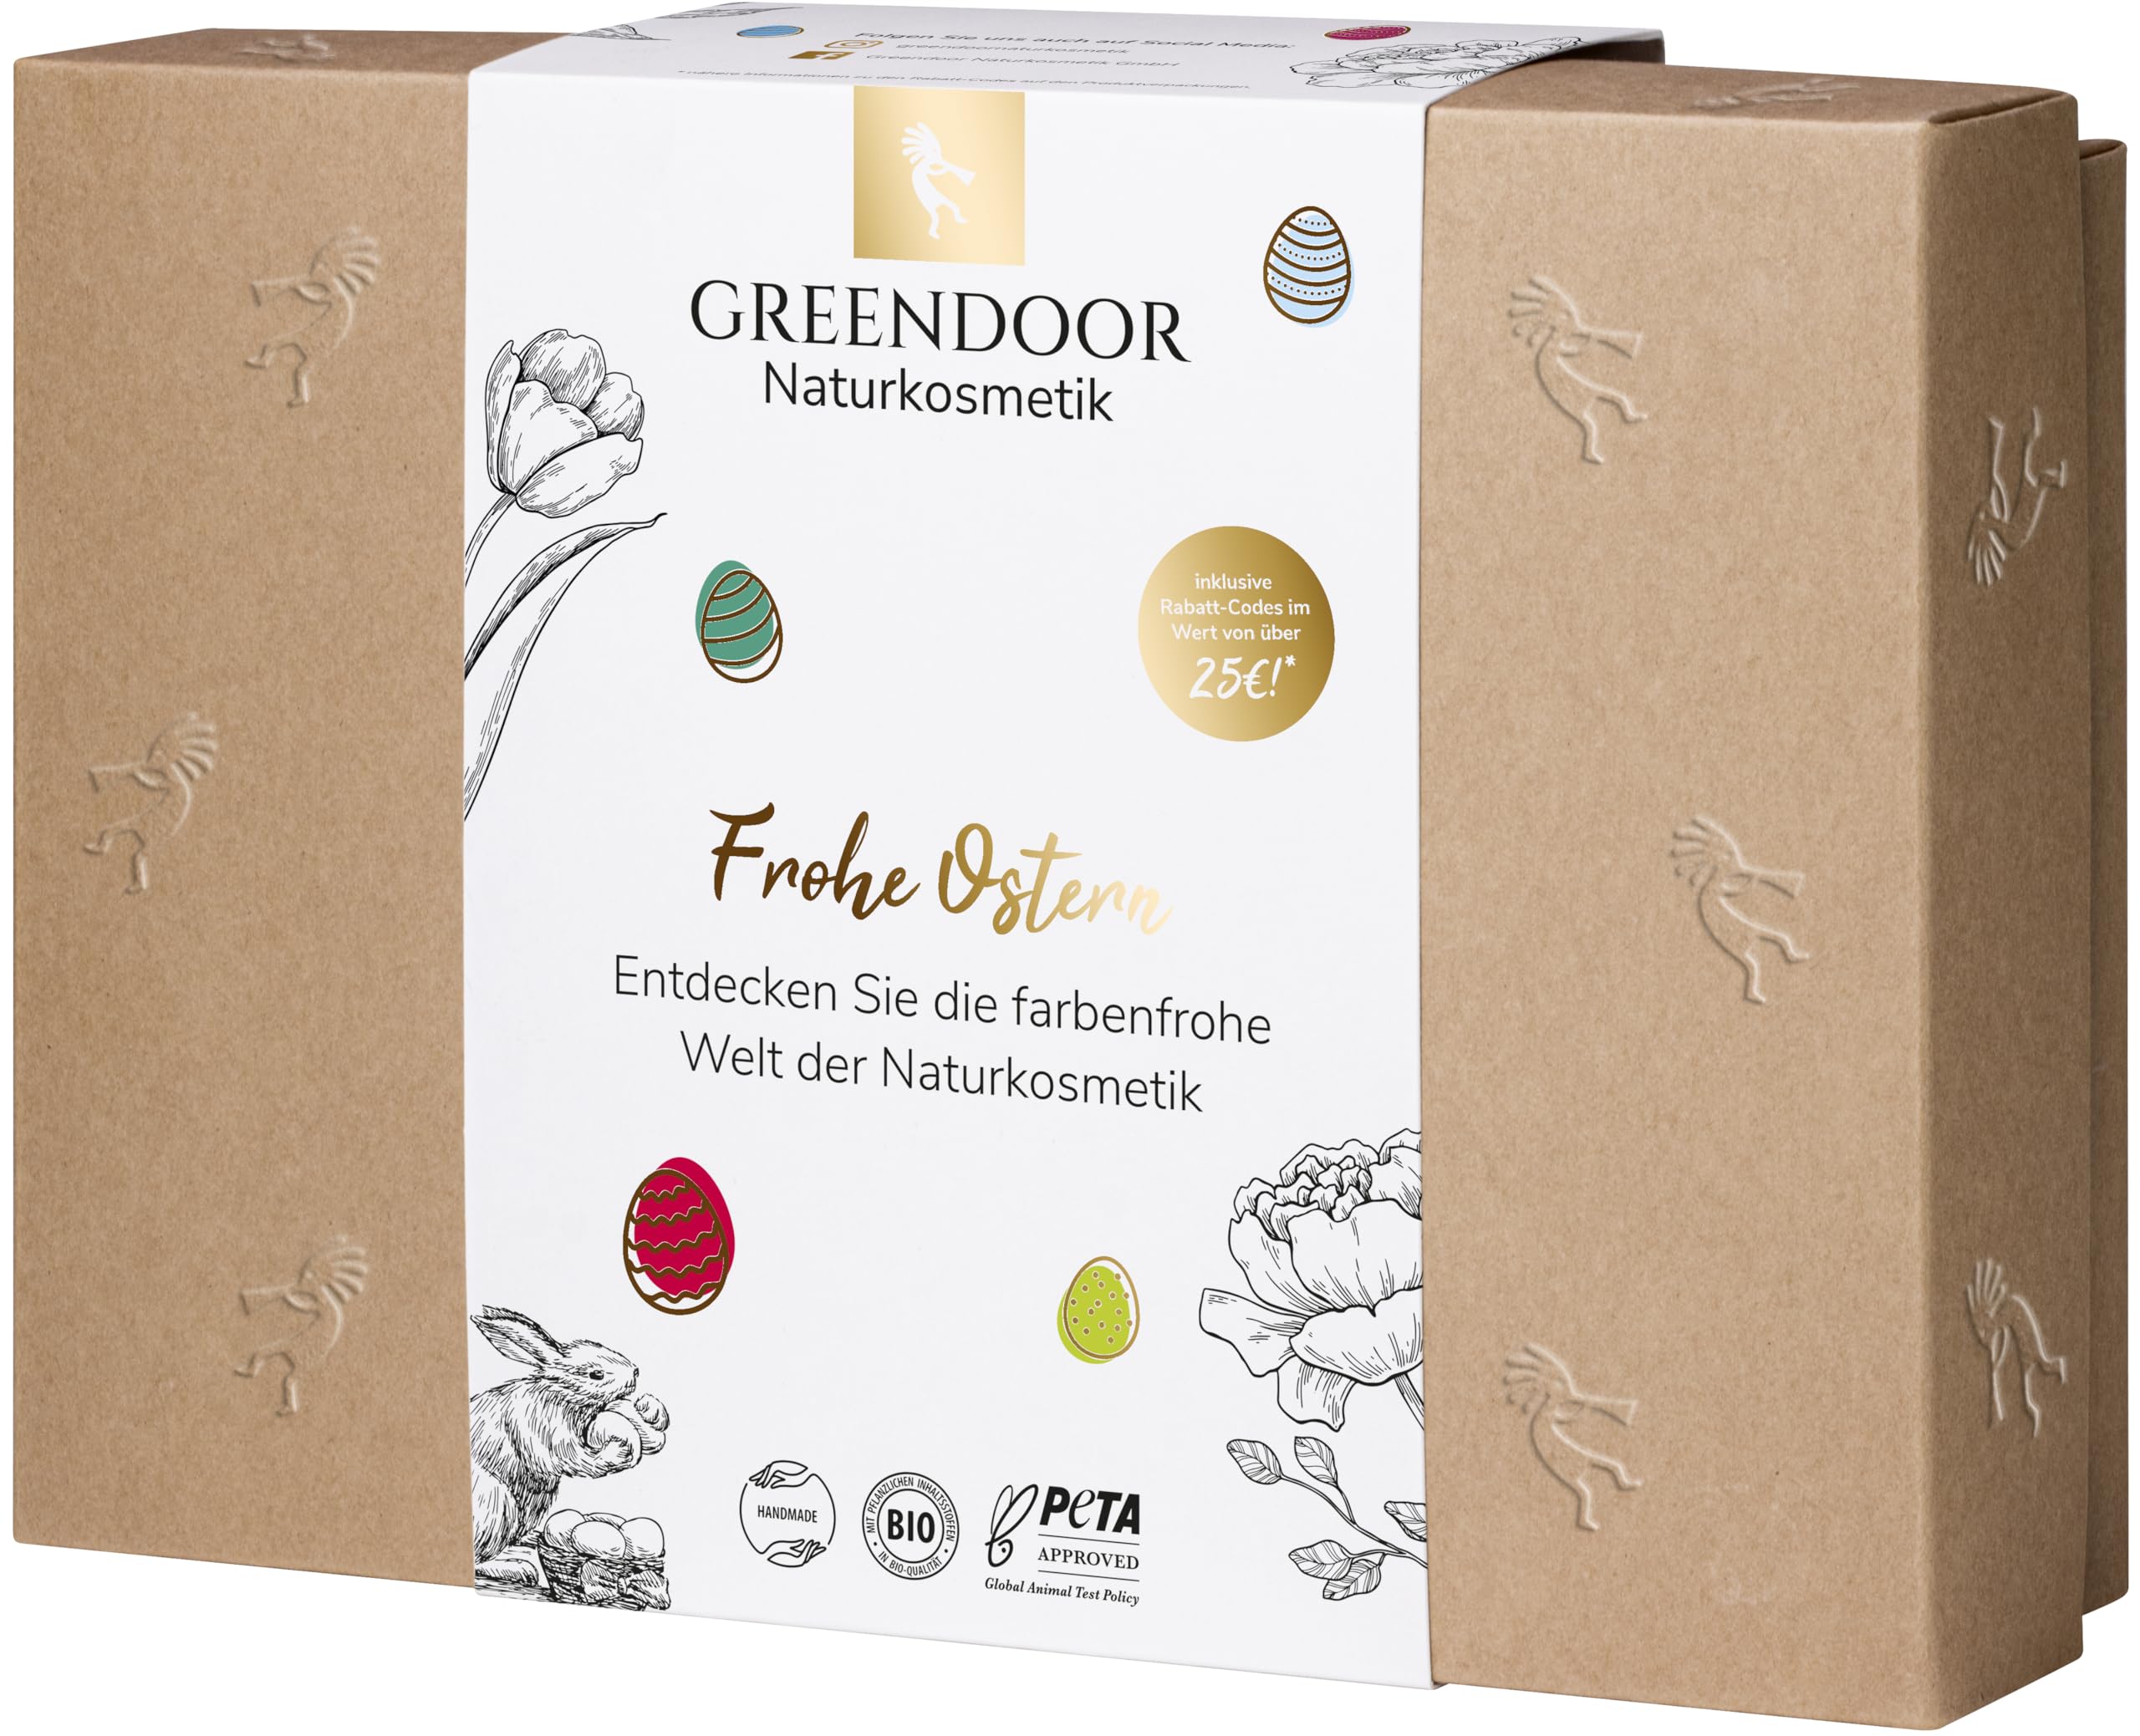 GREENDOOR Geschenkset Ostern, 24 Stück GREENDOOR Naturkosmetik Produkte im Wert von ca 110 Euro in kleinen Packungsgrößen, Rabatt Codes auf den Faltschachteln